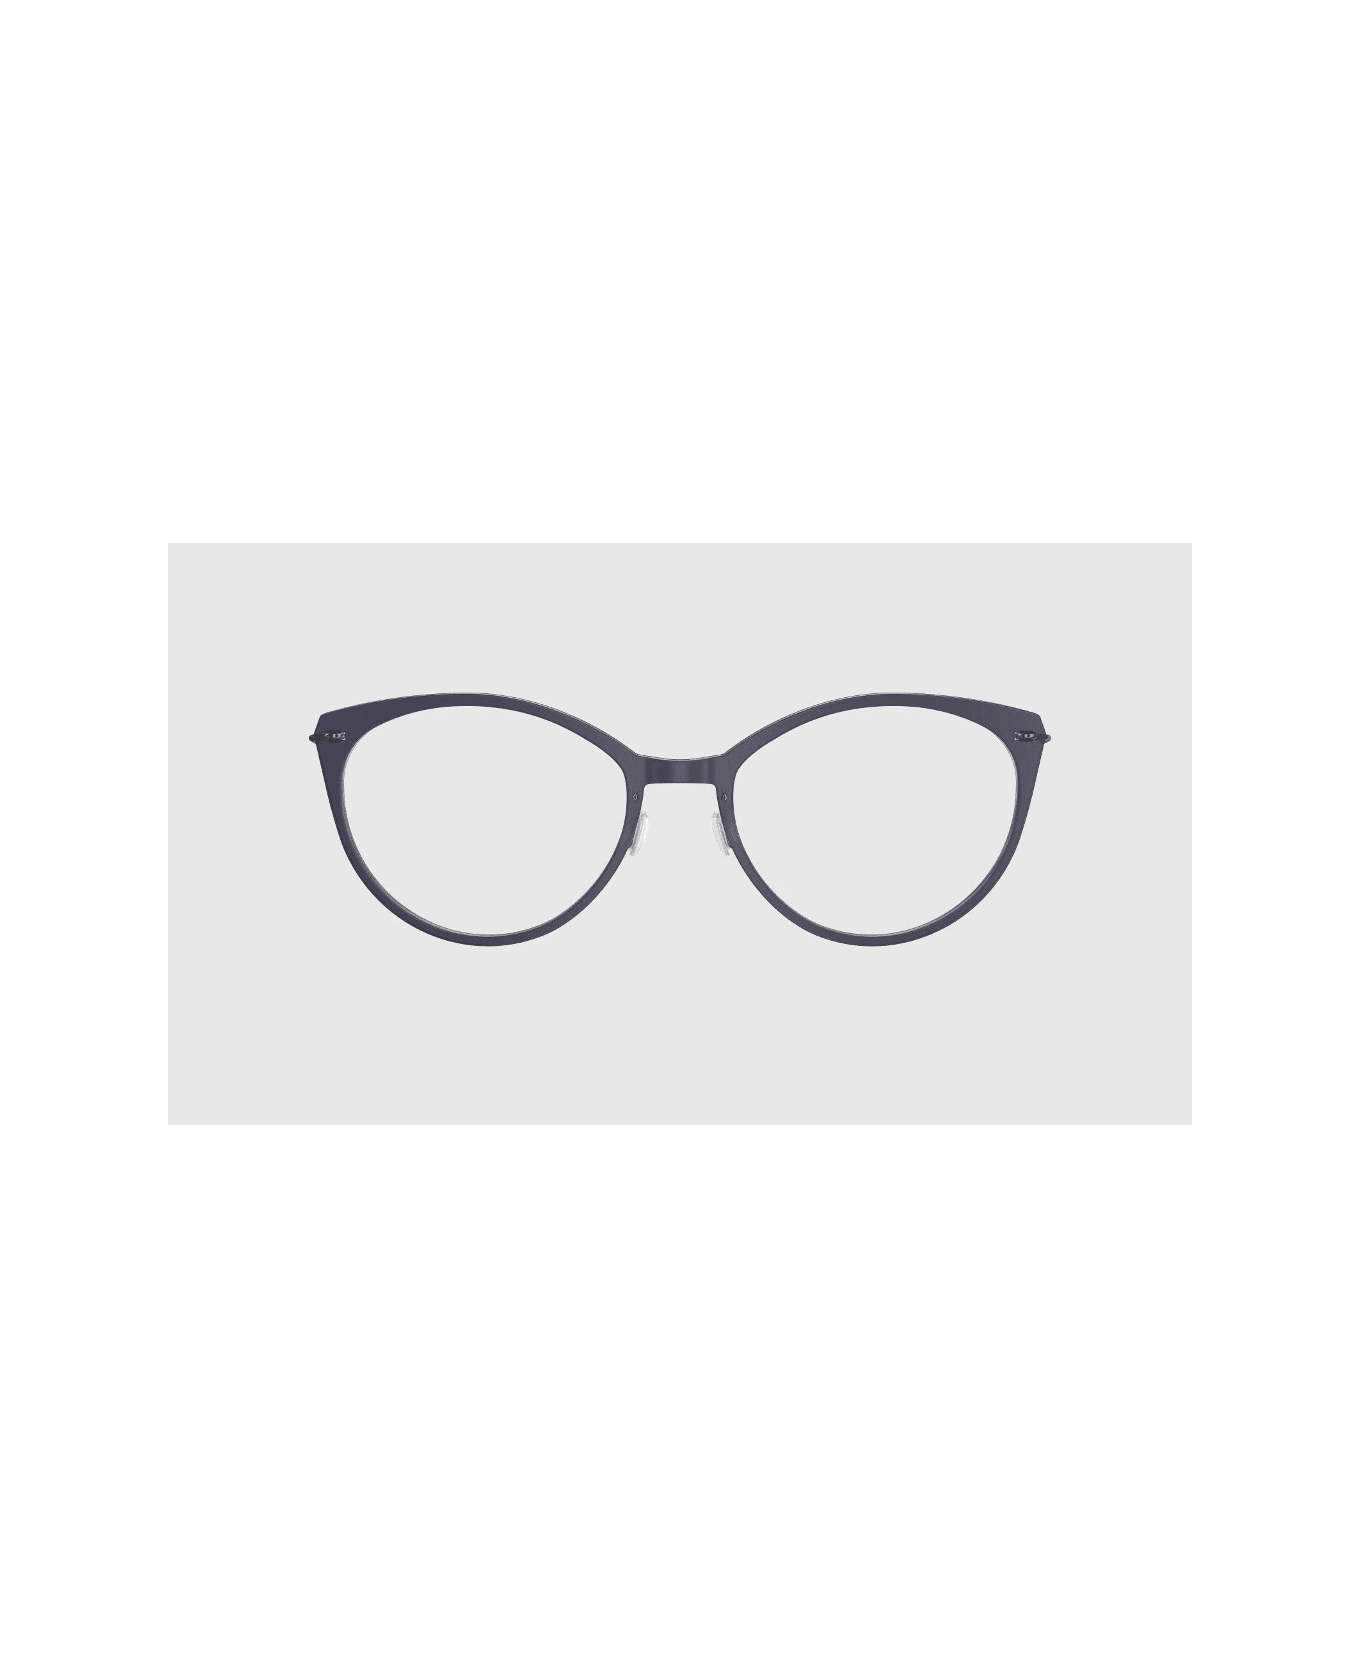 LINDBERG Now 6520 D16 Glasses アイウェア